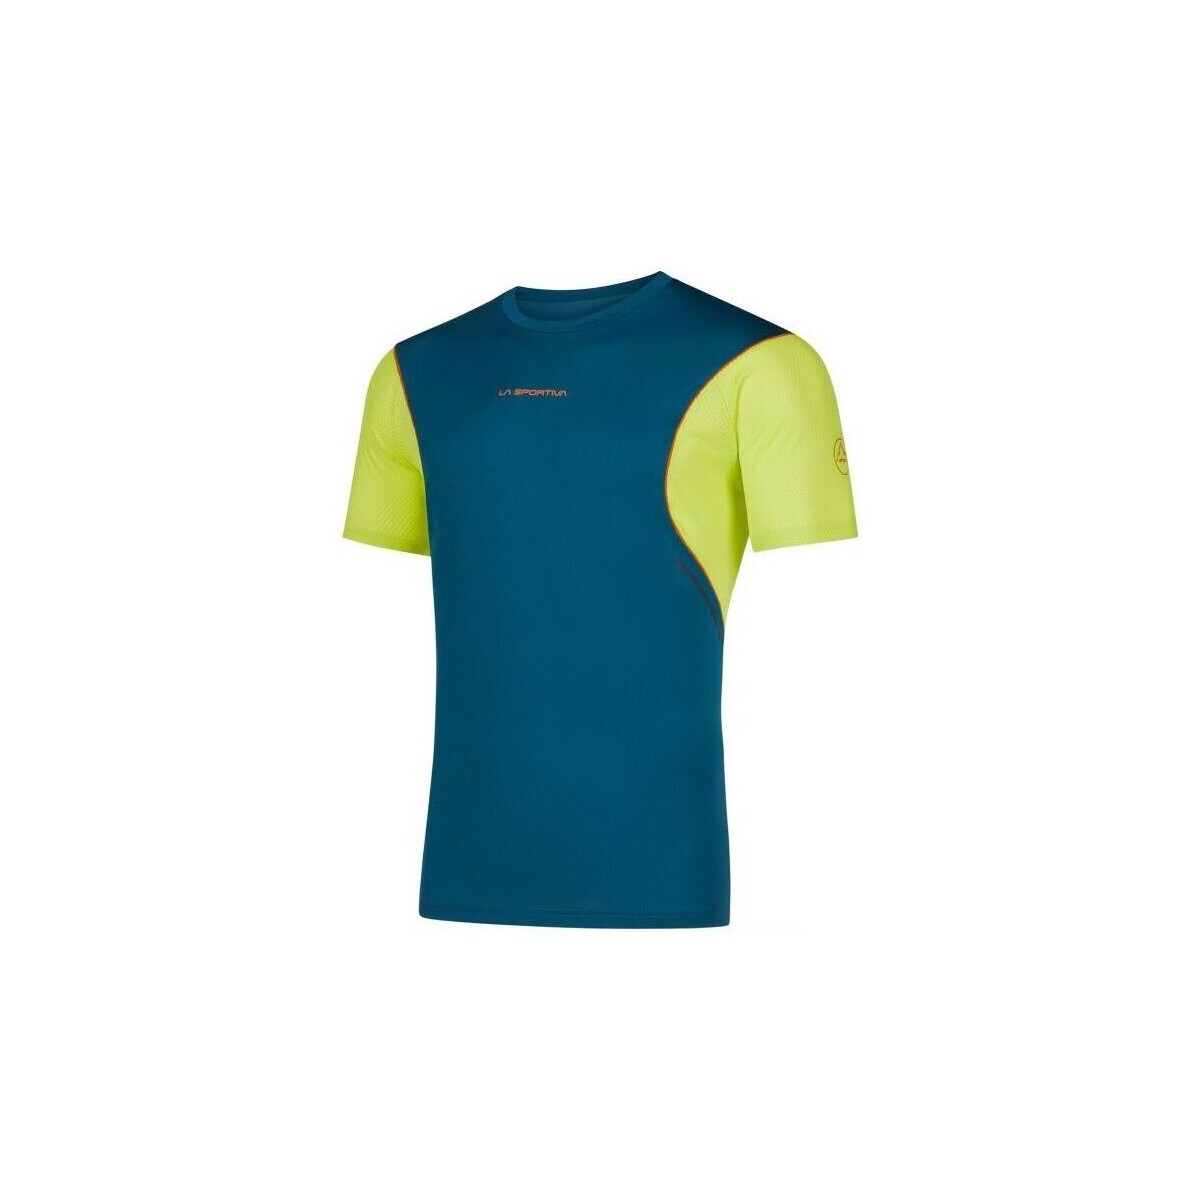 Abbigliamento Uomo T-shirt maniche corte La Sportiva T-shirt Resolute Uomo Storm Blue/Lime Punch Blu